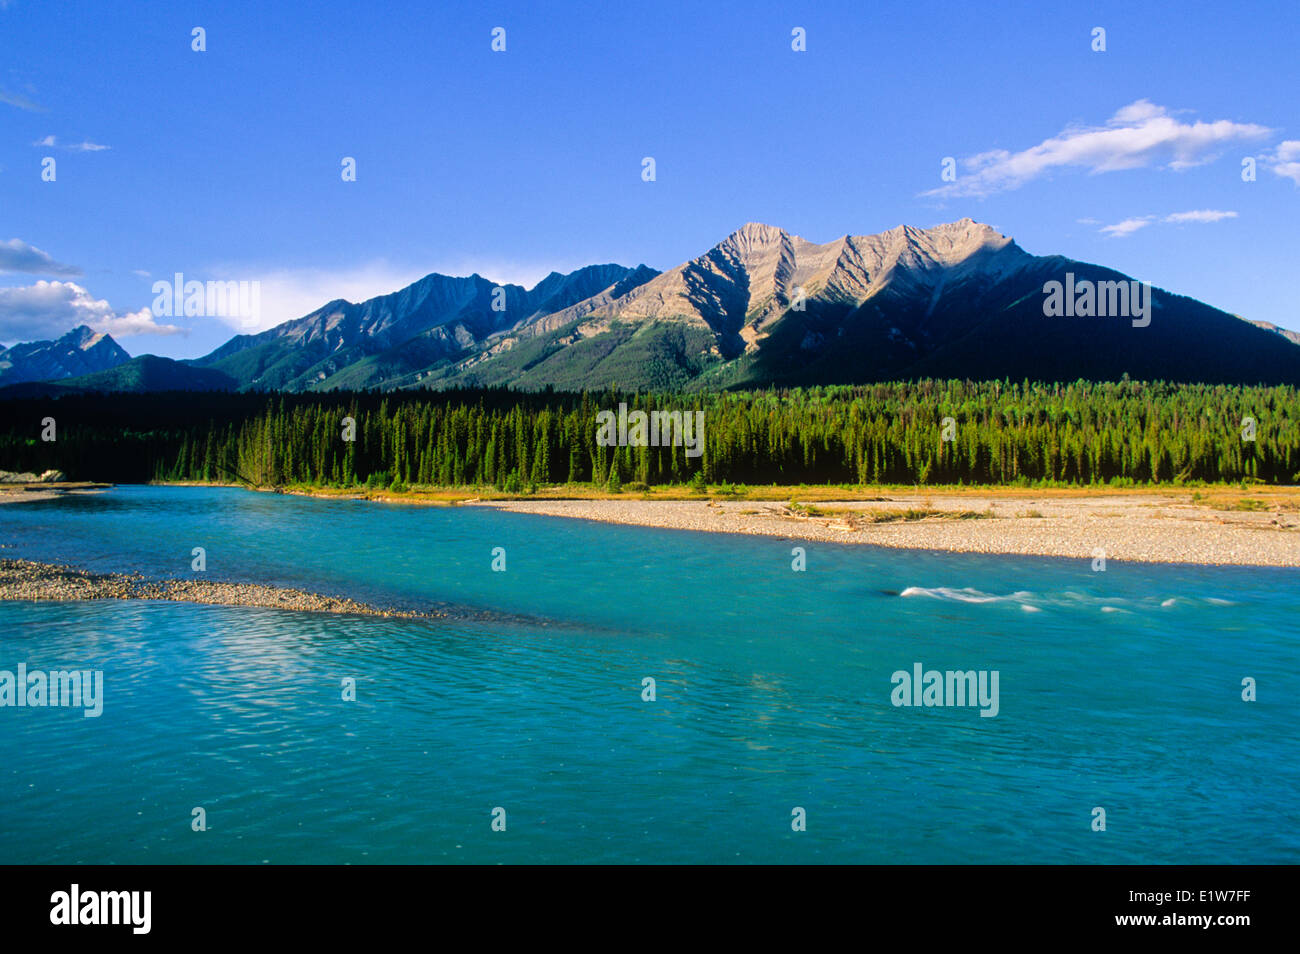 Kootenay River, Kootenay National Park, British Columbia, Canada Stock Photo